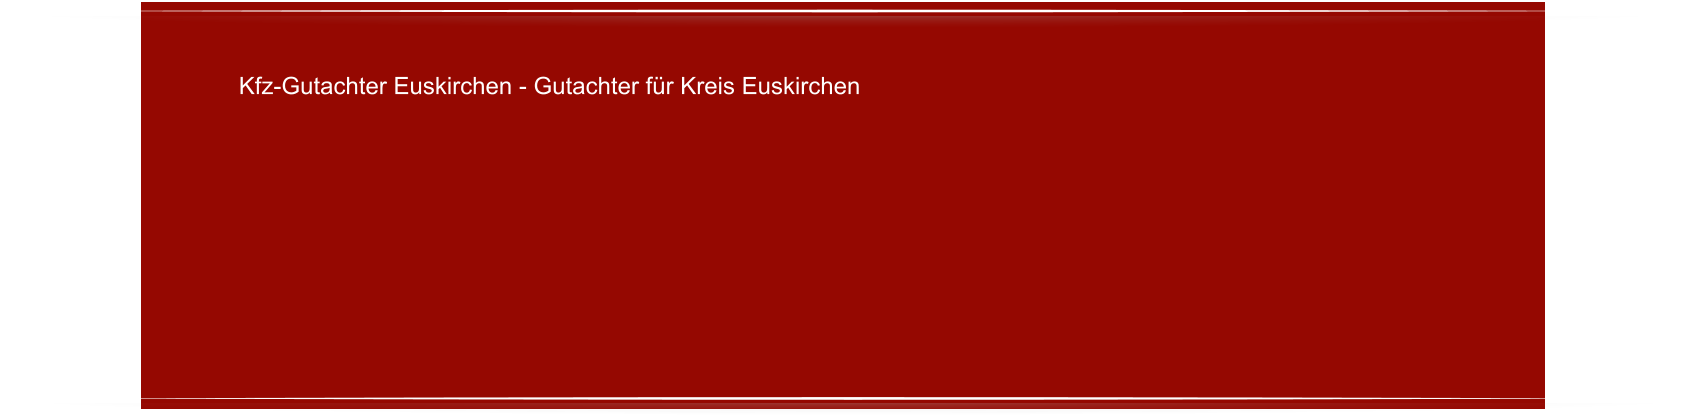 Kfz-Gutachter Euskirchen - Gutachter fr Kreis Euskirchen